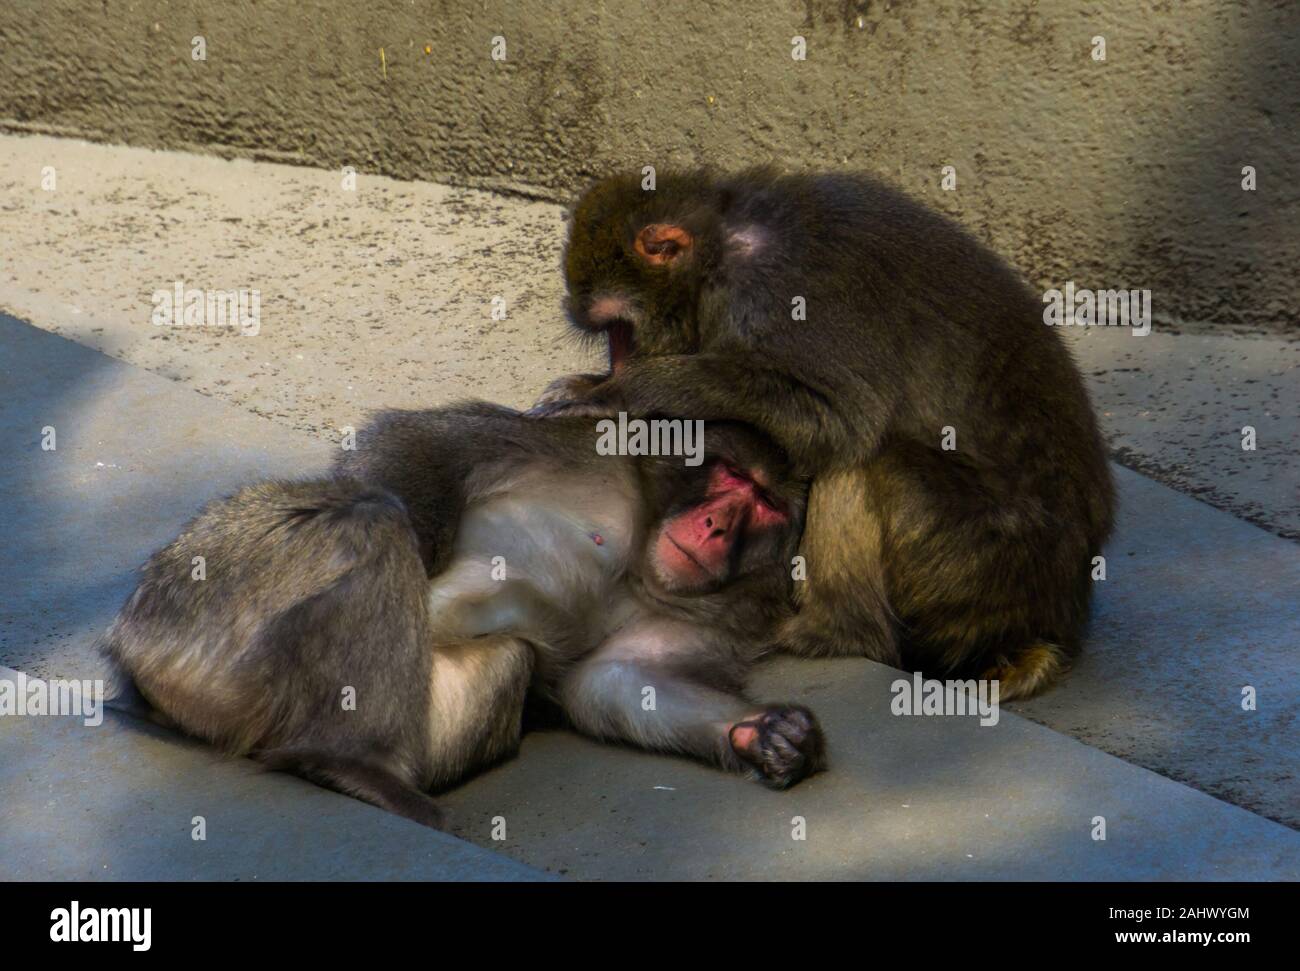 Macaque giapponese giovane toelettatura ogni altro in primo piano, tipico sociale il comportamento di primate, tropicali specie di scimmia dal Giappone Foto Stock